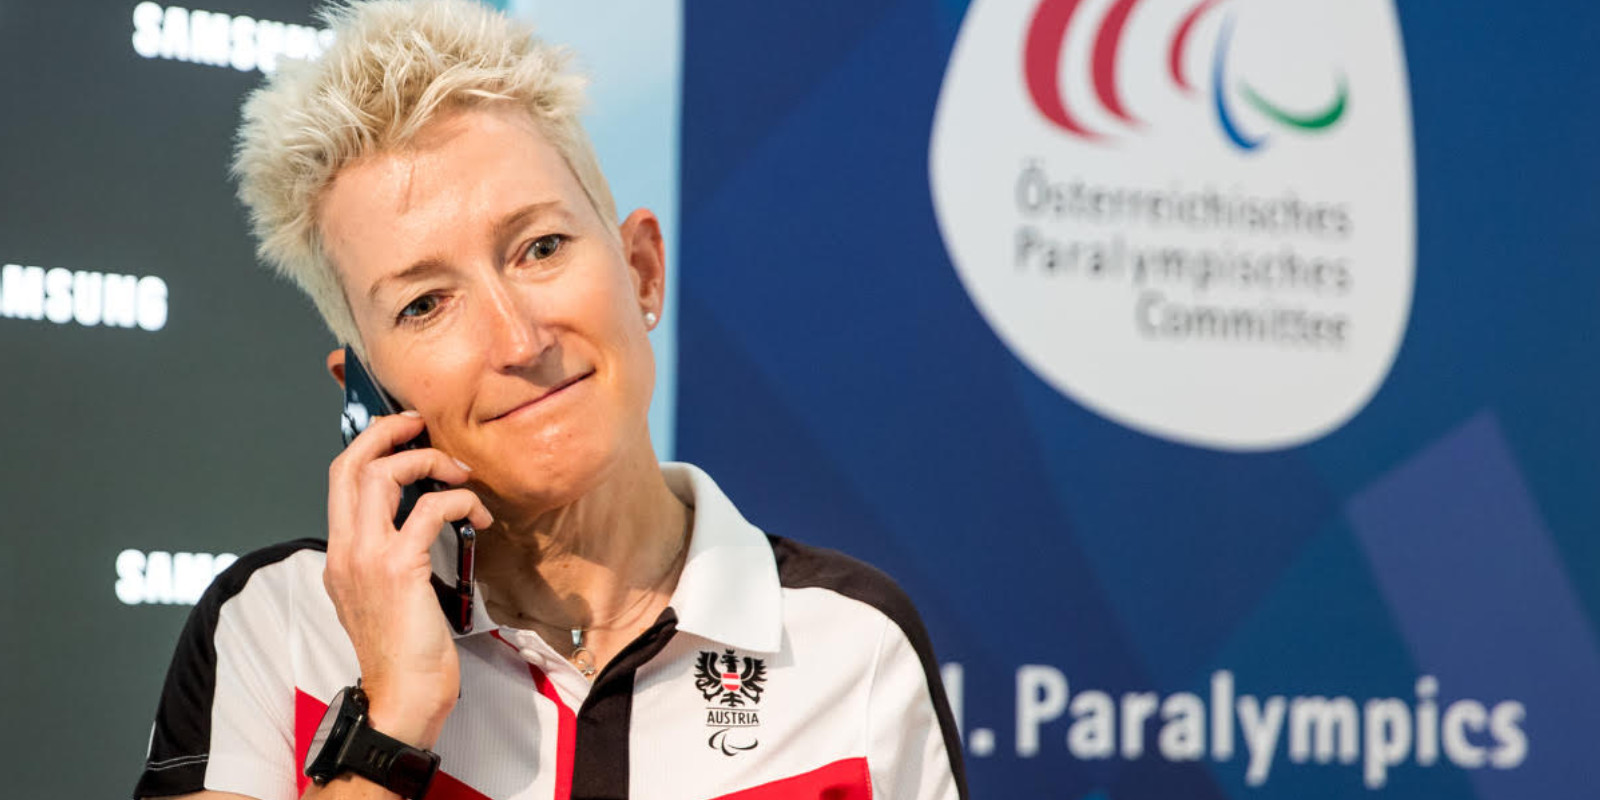 Yvonne Marzinke beim Telefonieren bei den Paralympics